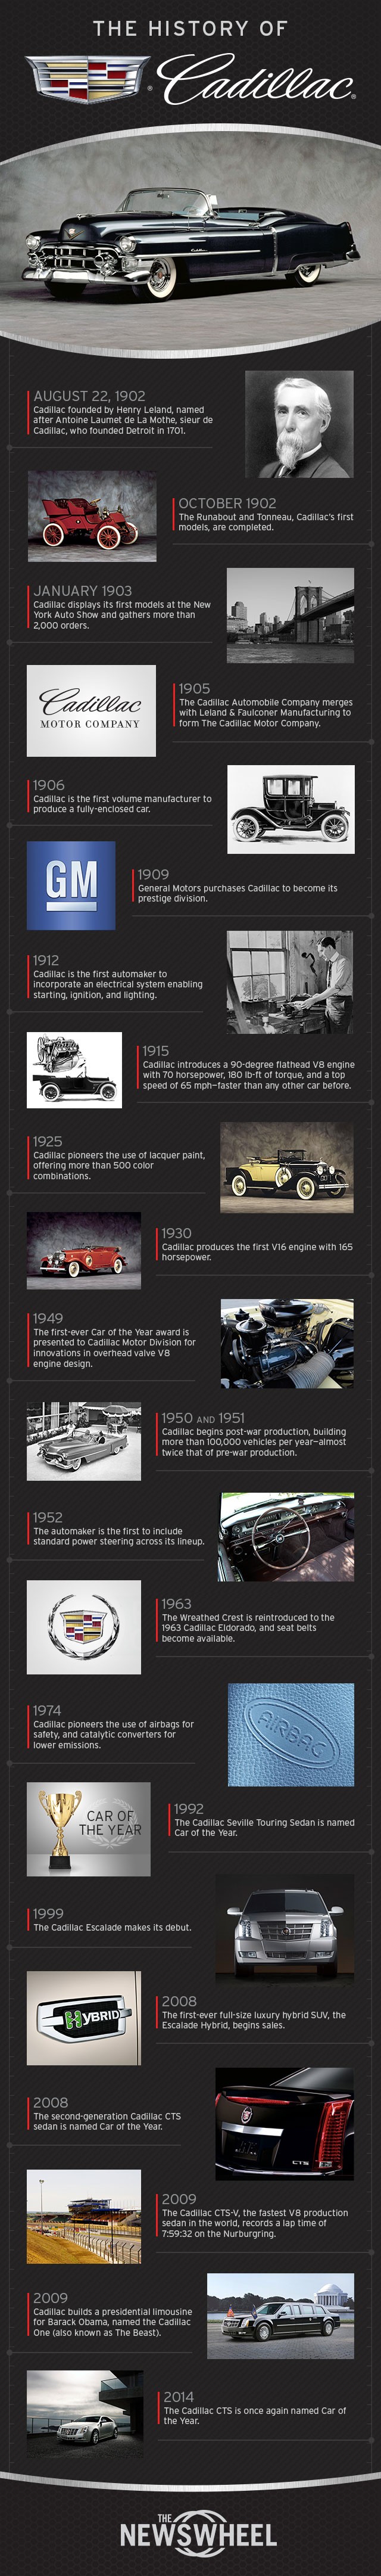 History of Cadillac